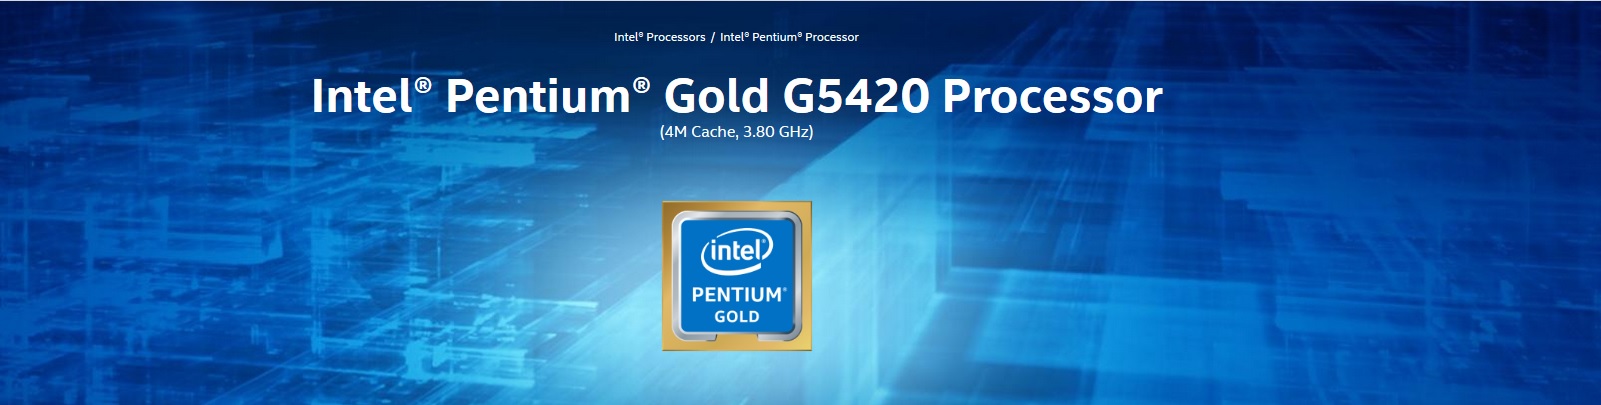 Intel Pentium Gold G5420 Processor